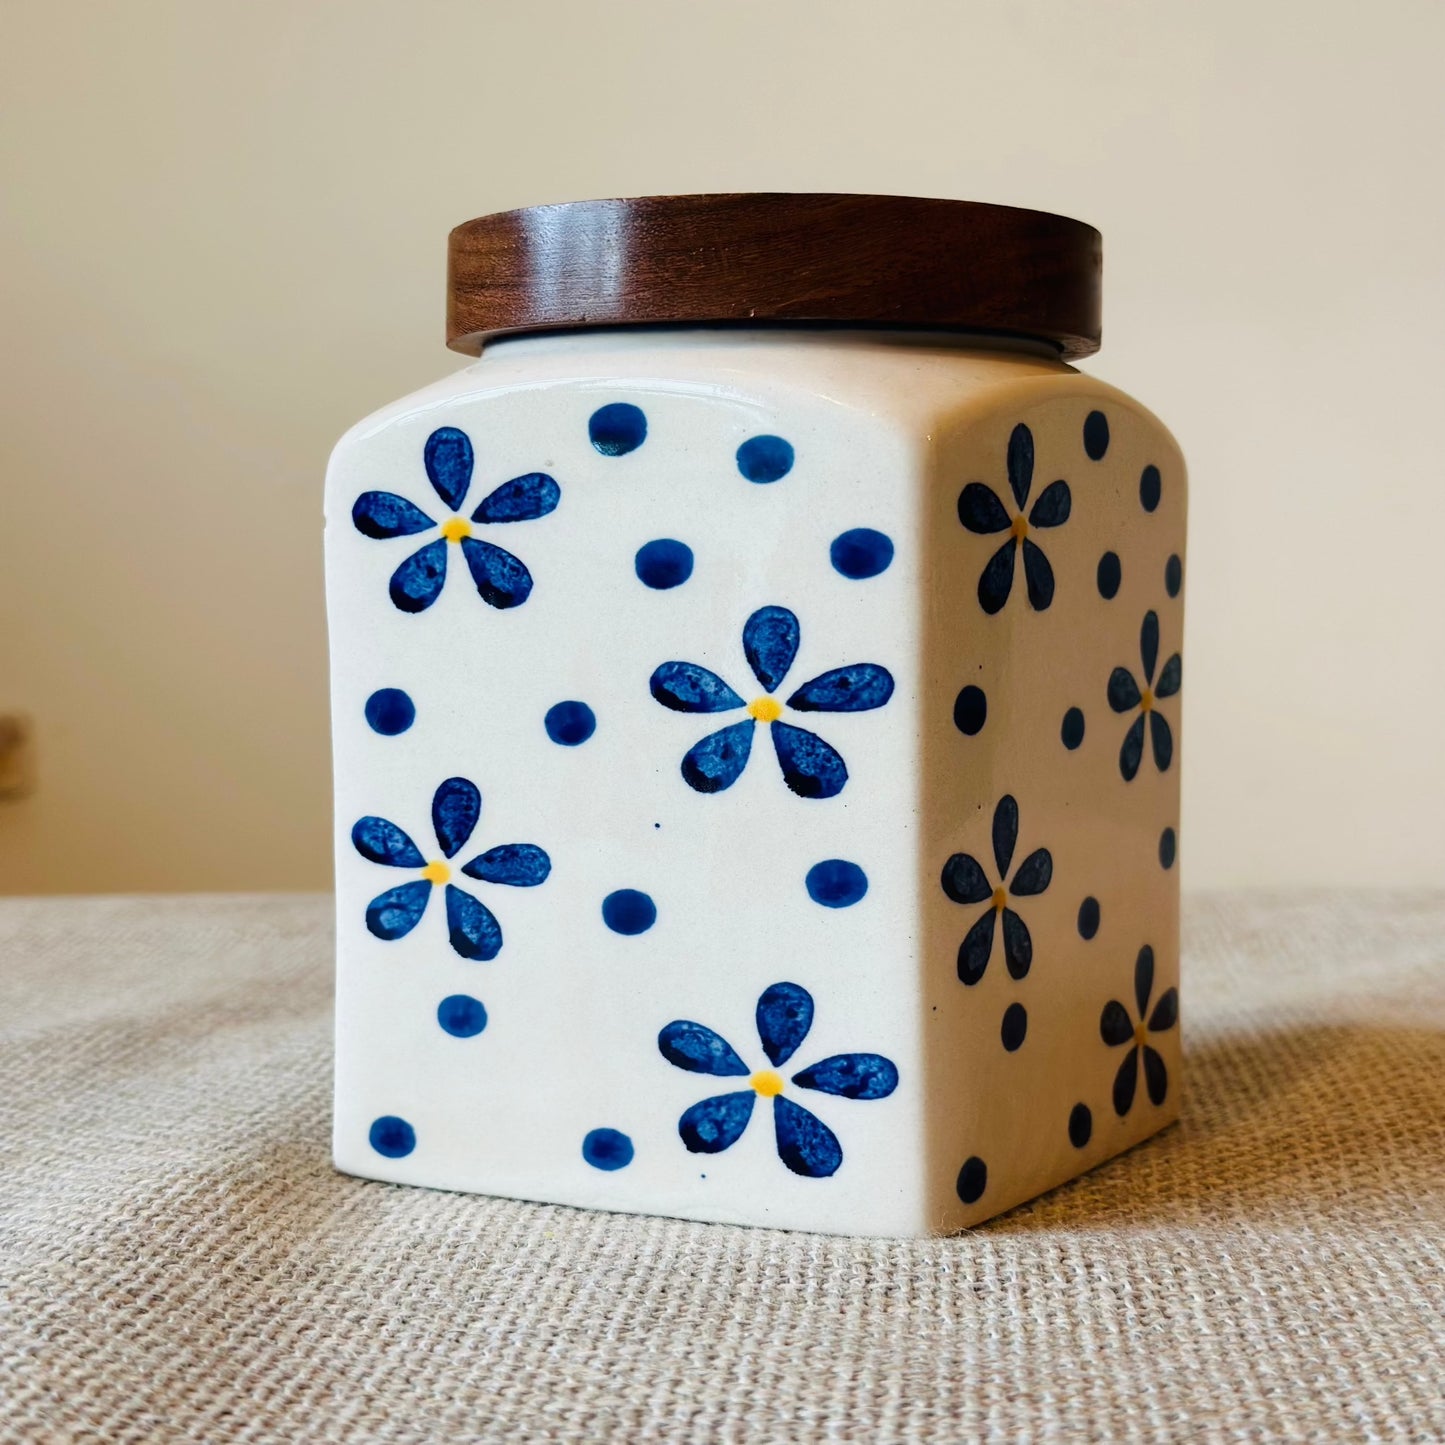 Ceramic blue flower jar big or small - single